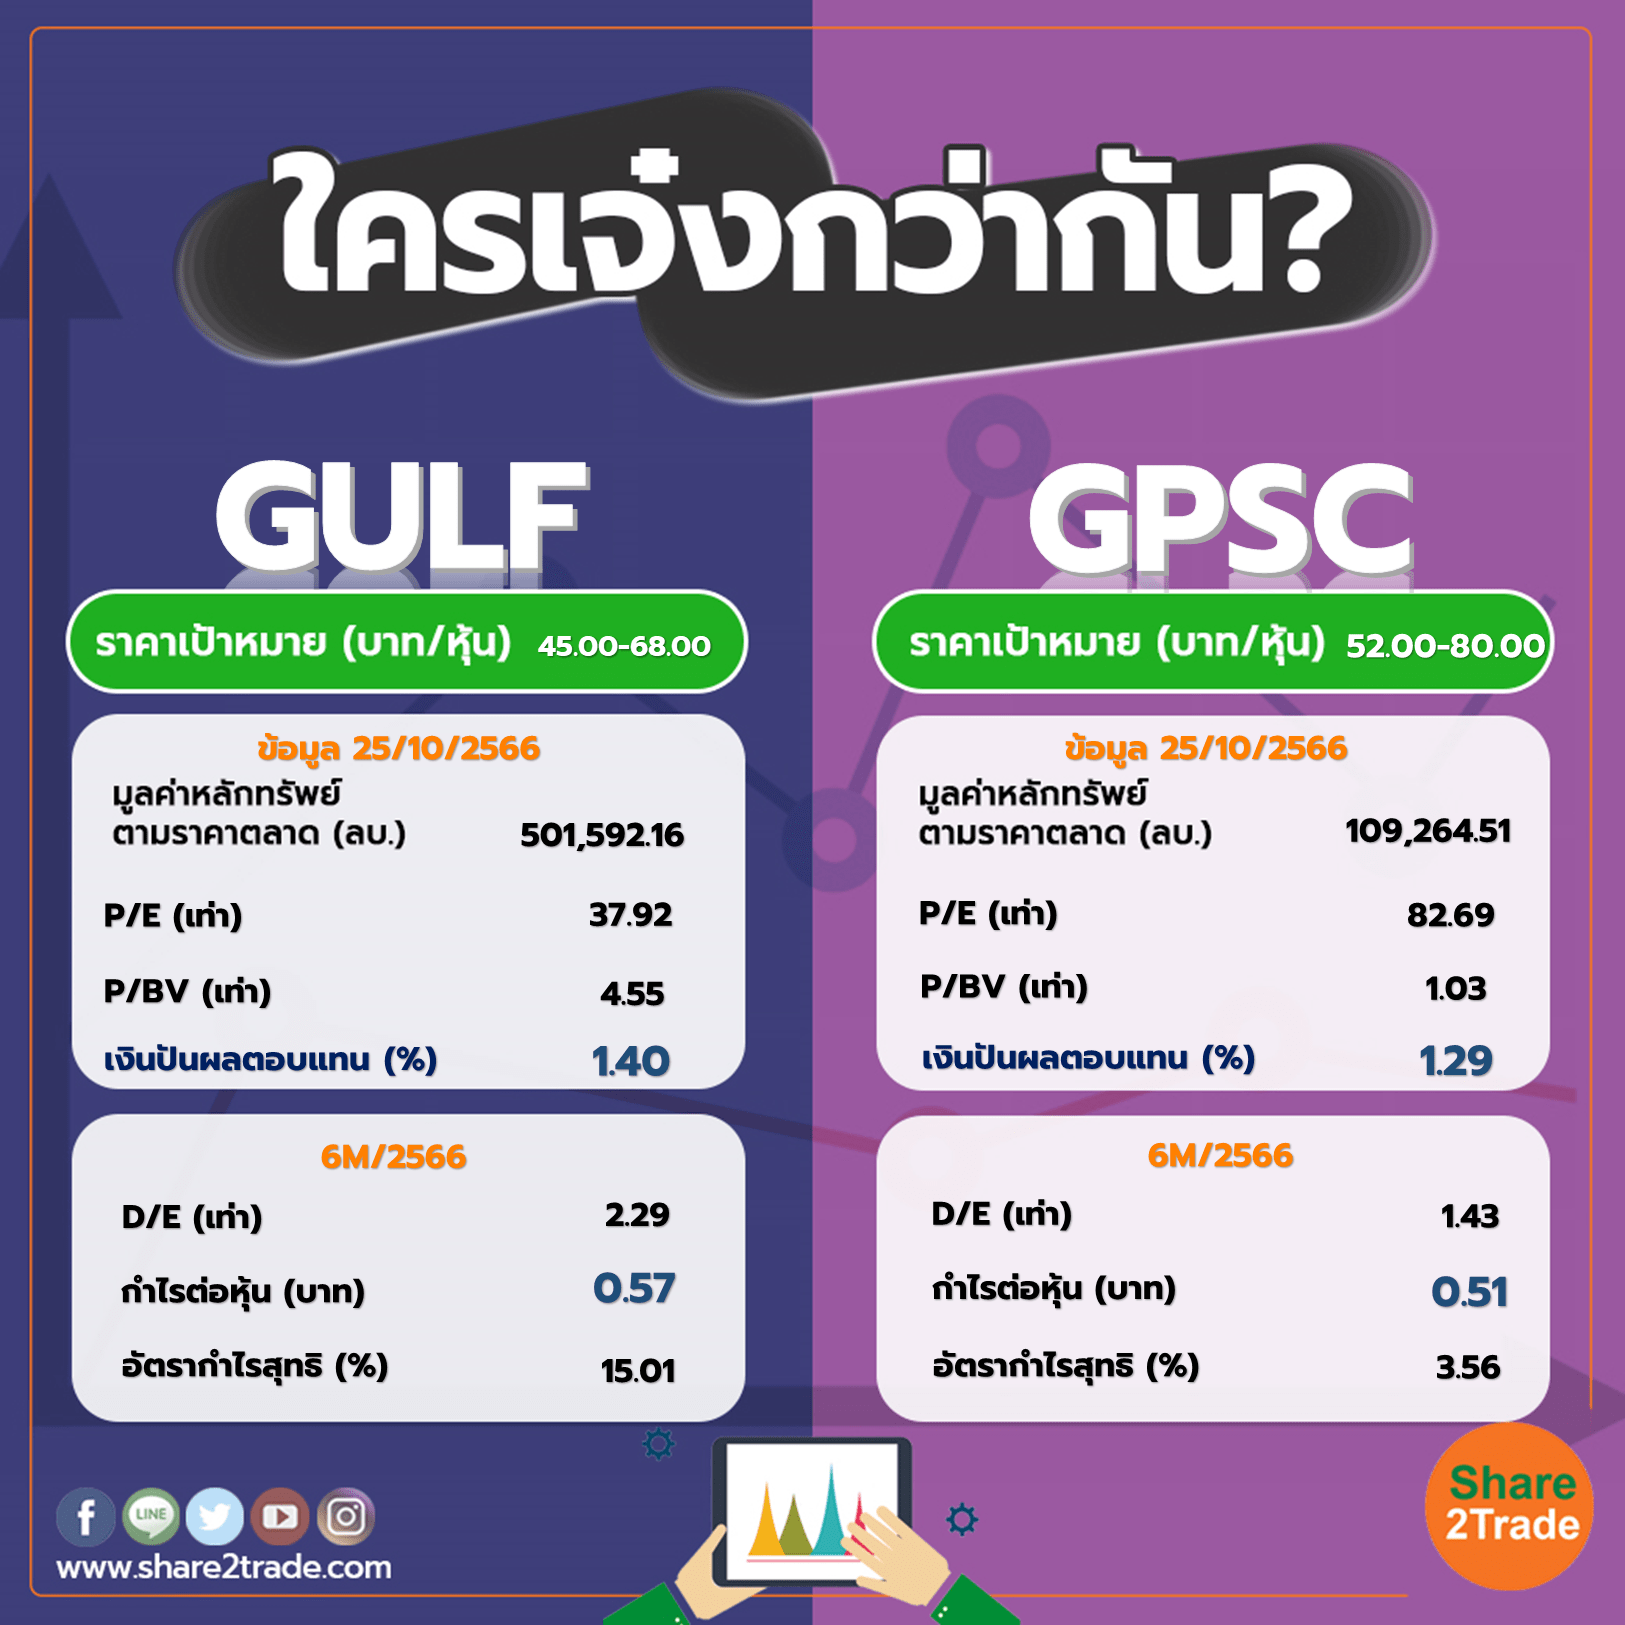 ใครเจ๋งกว่ากัน "GULF" VS "GPSC"